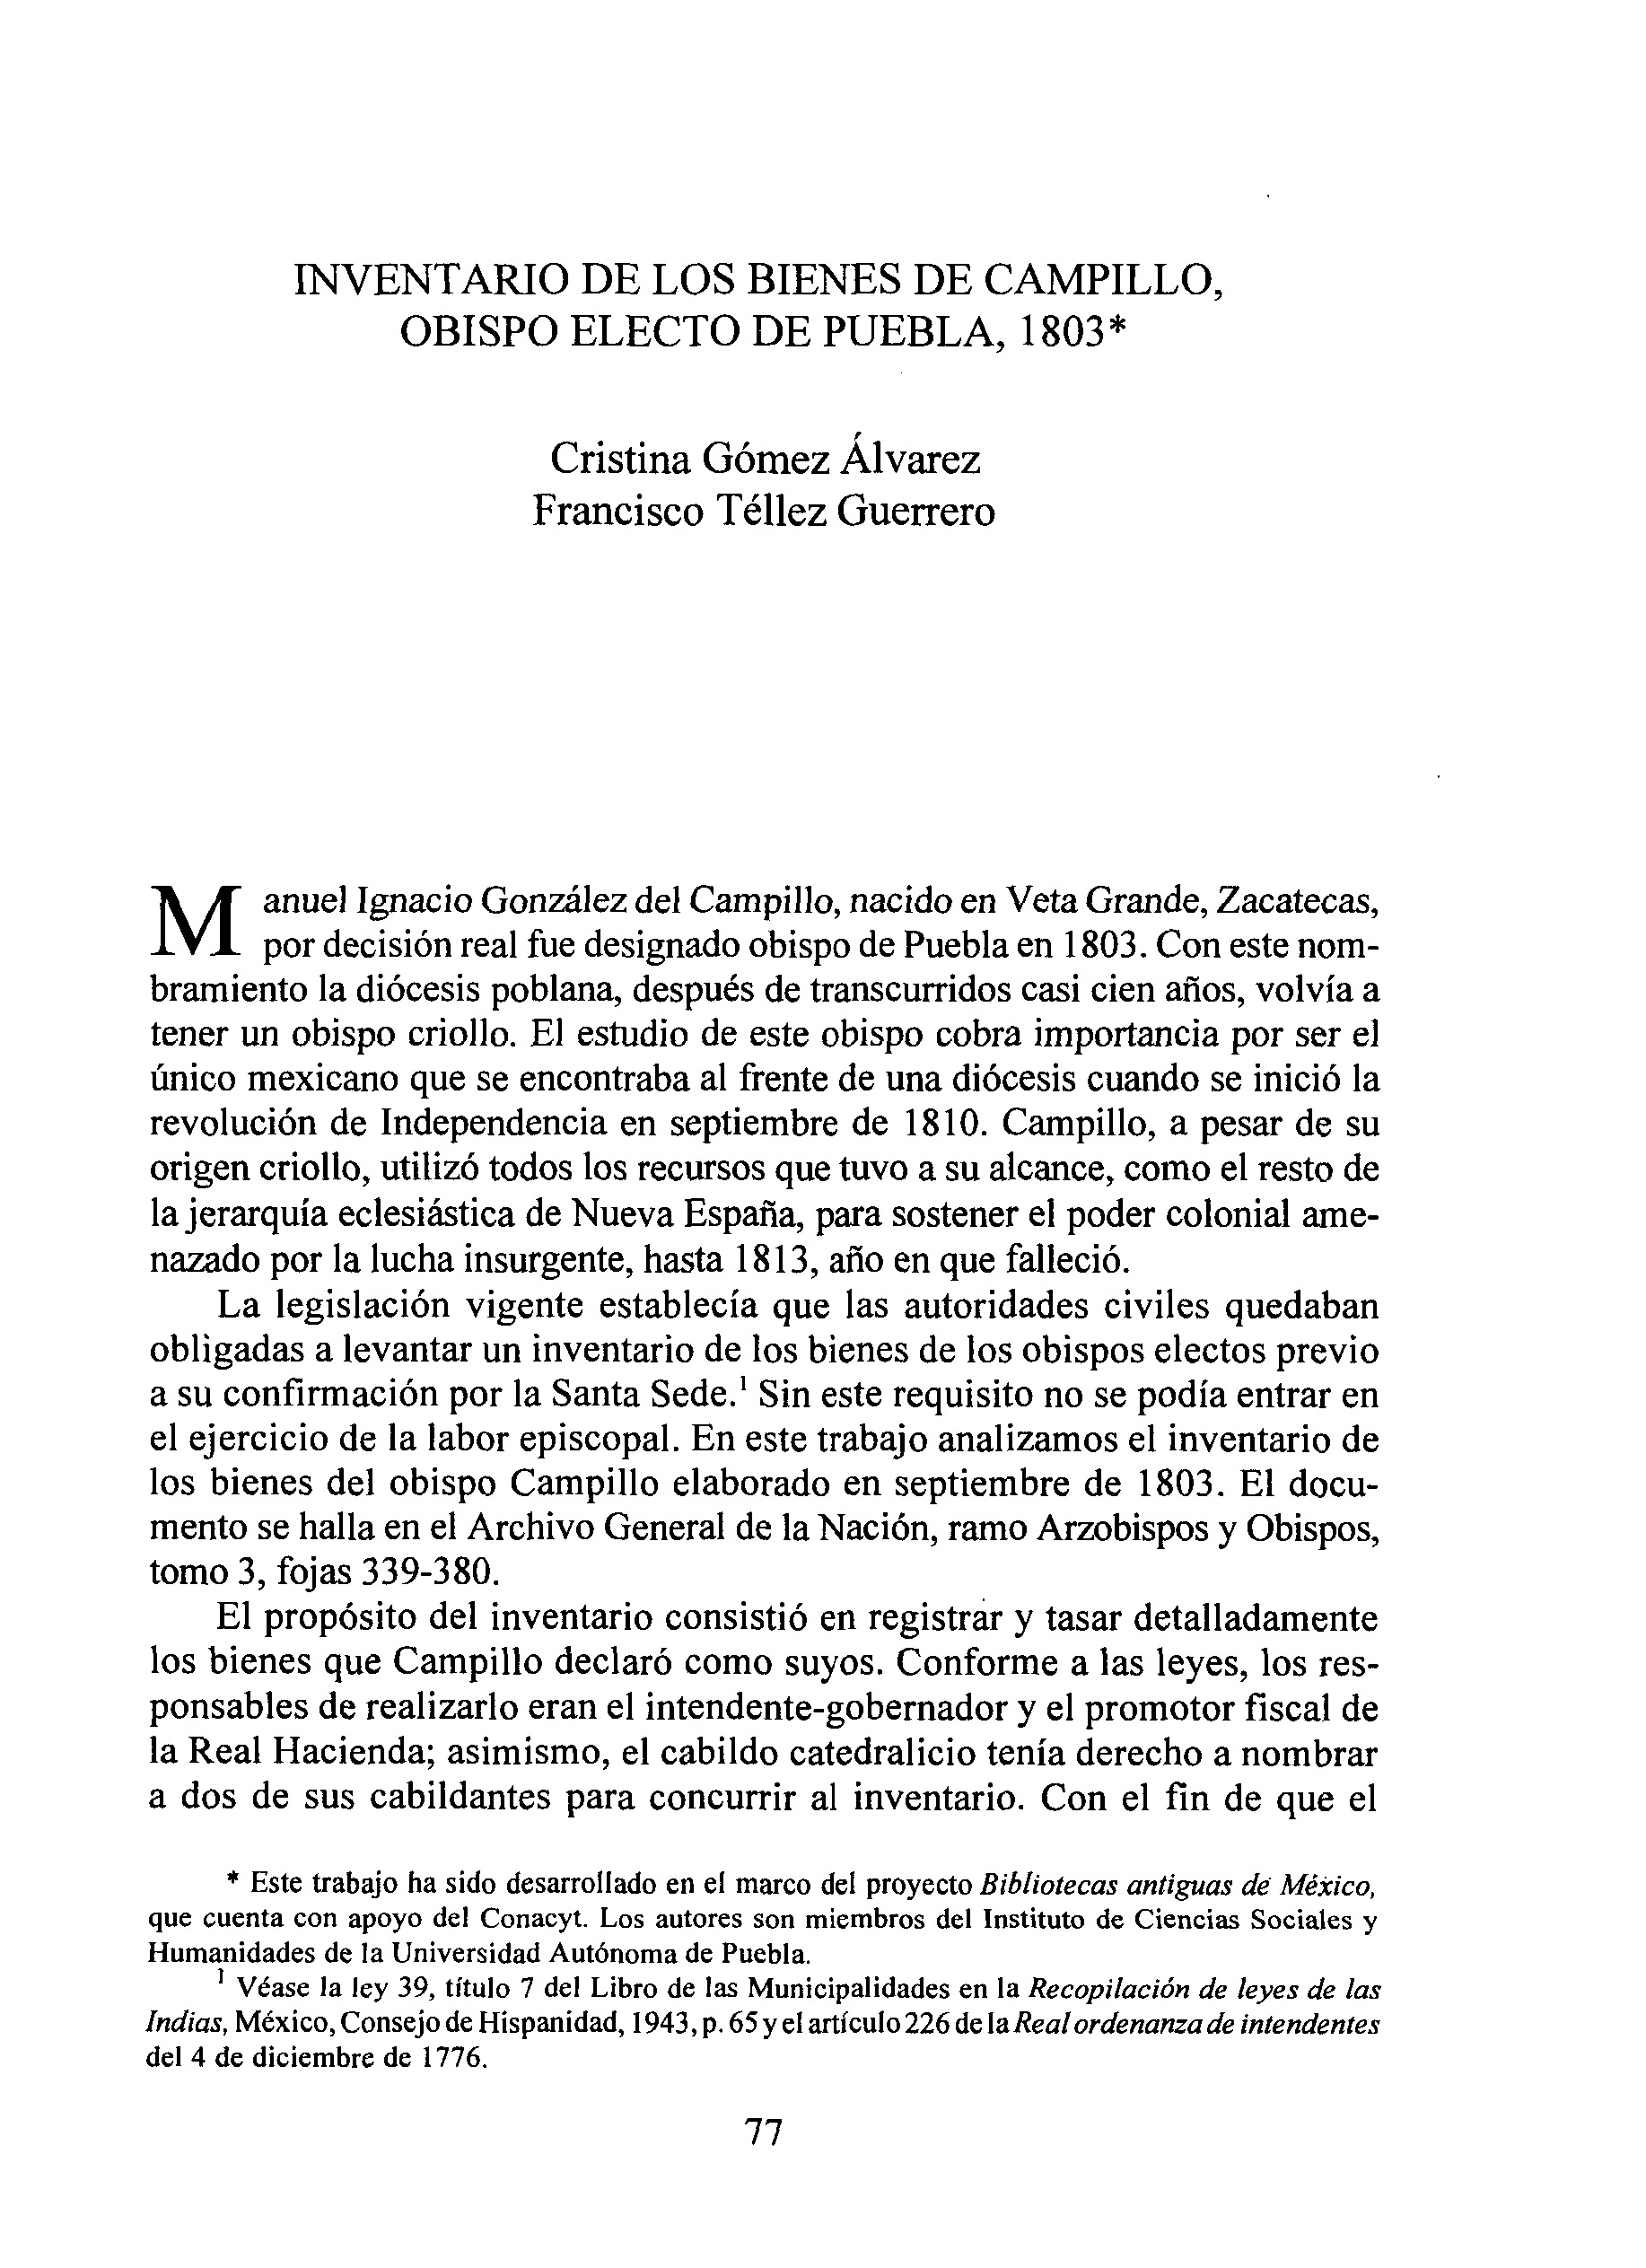 Inventario de los bienes de Campillo, obispo electo de Puebla, 1803 